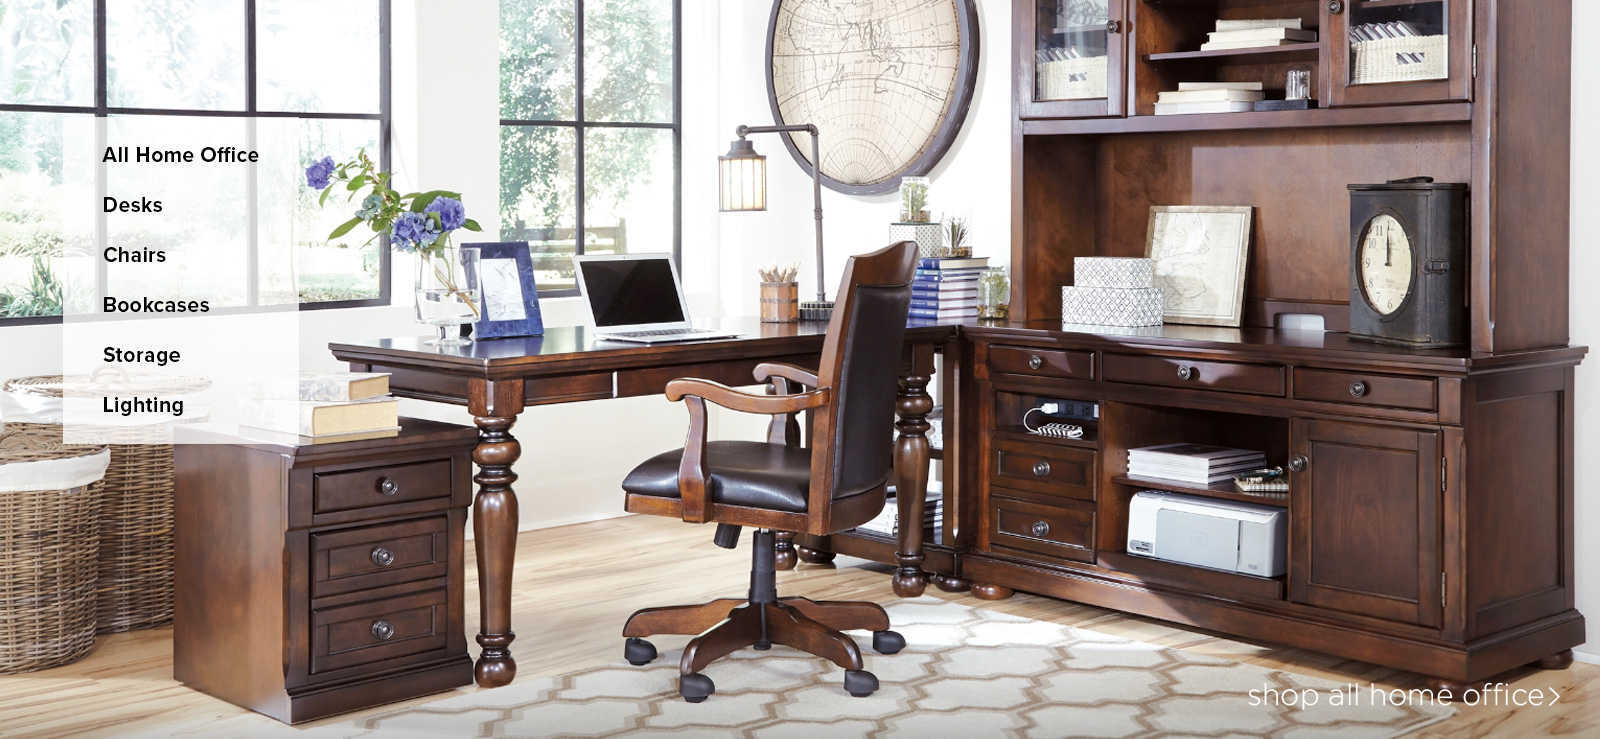 New Home Office. Shop Desks home office furniture desk